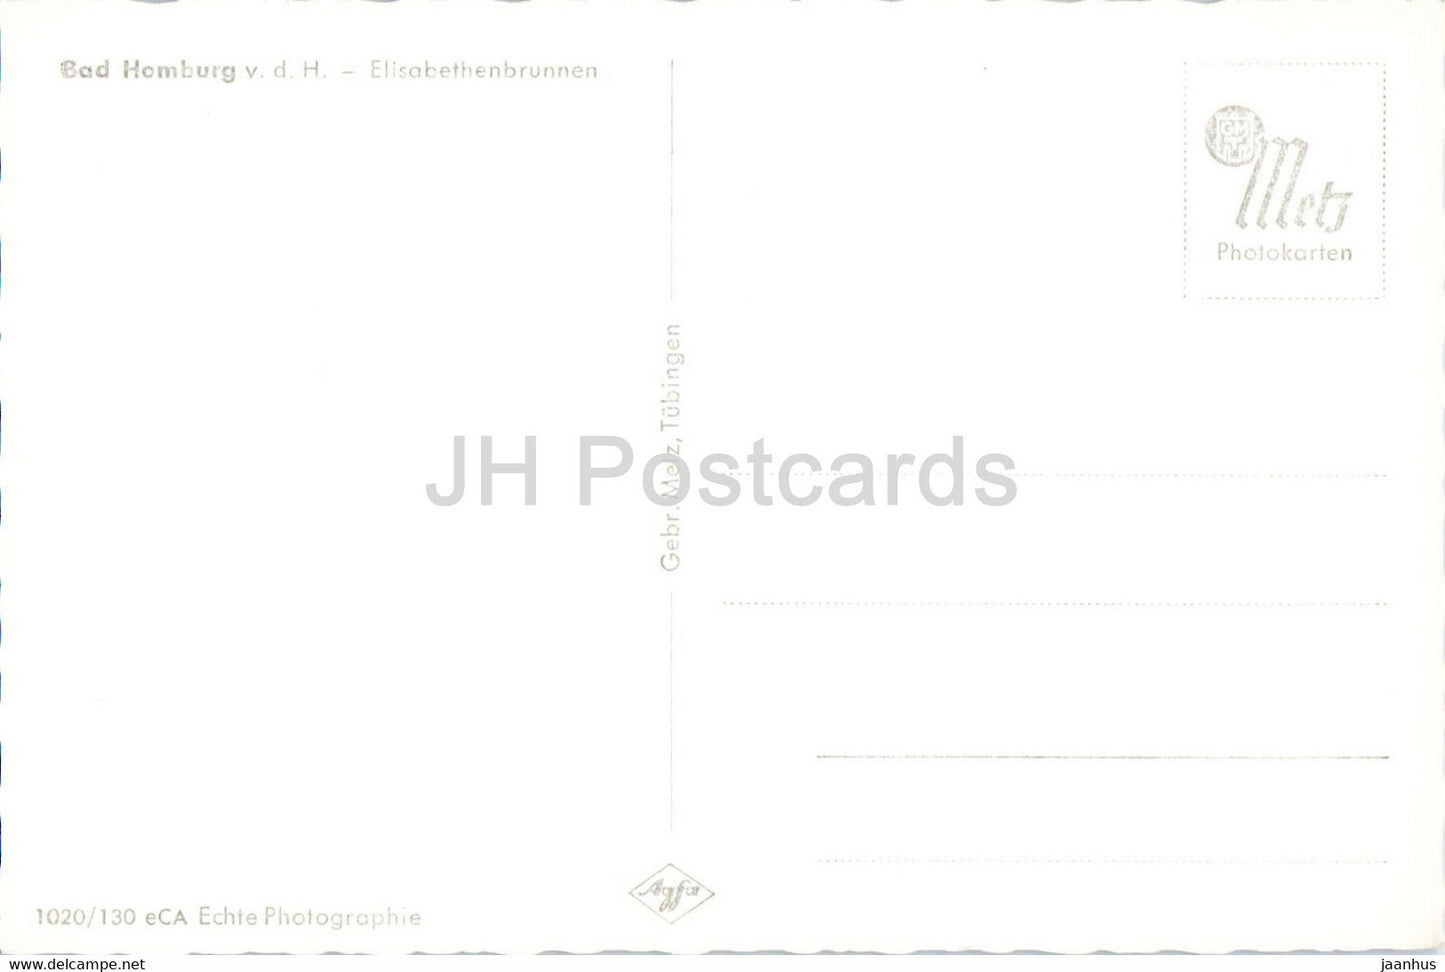 Bad Homburg - Elisabethenbrunnen - old postcard - Germany - unused